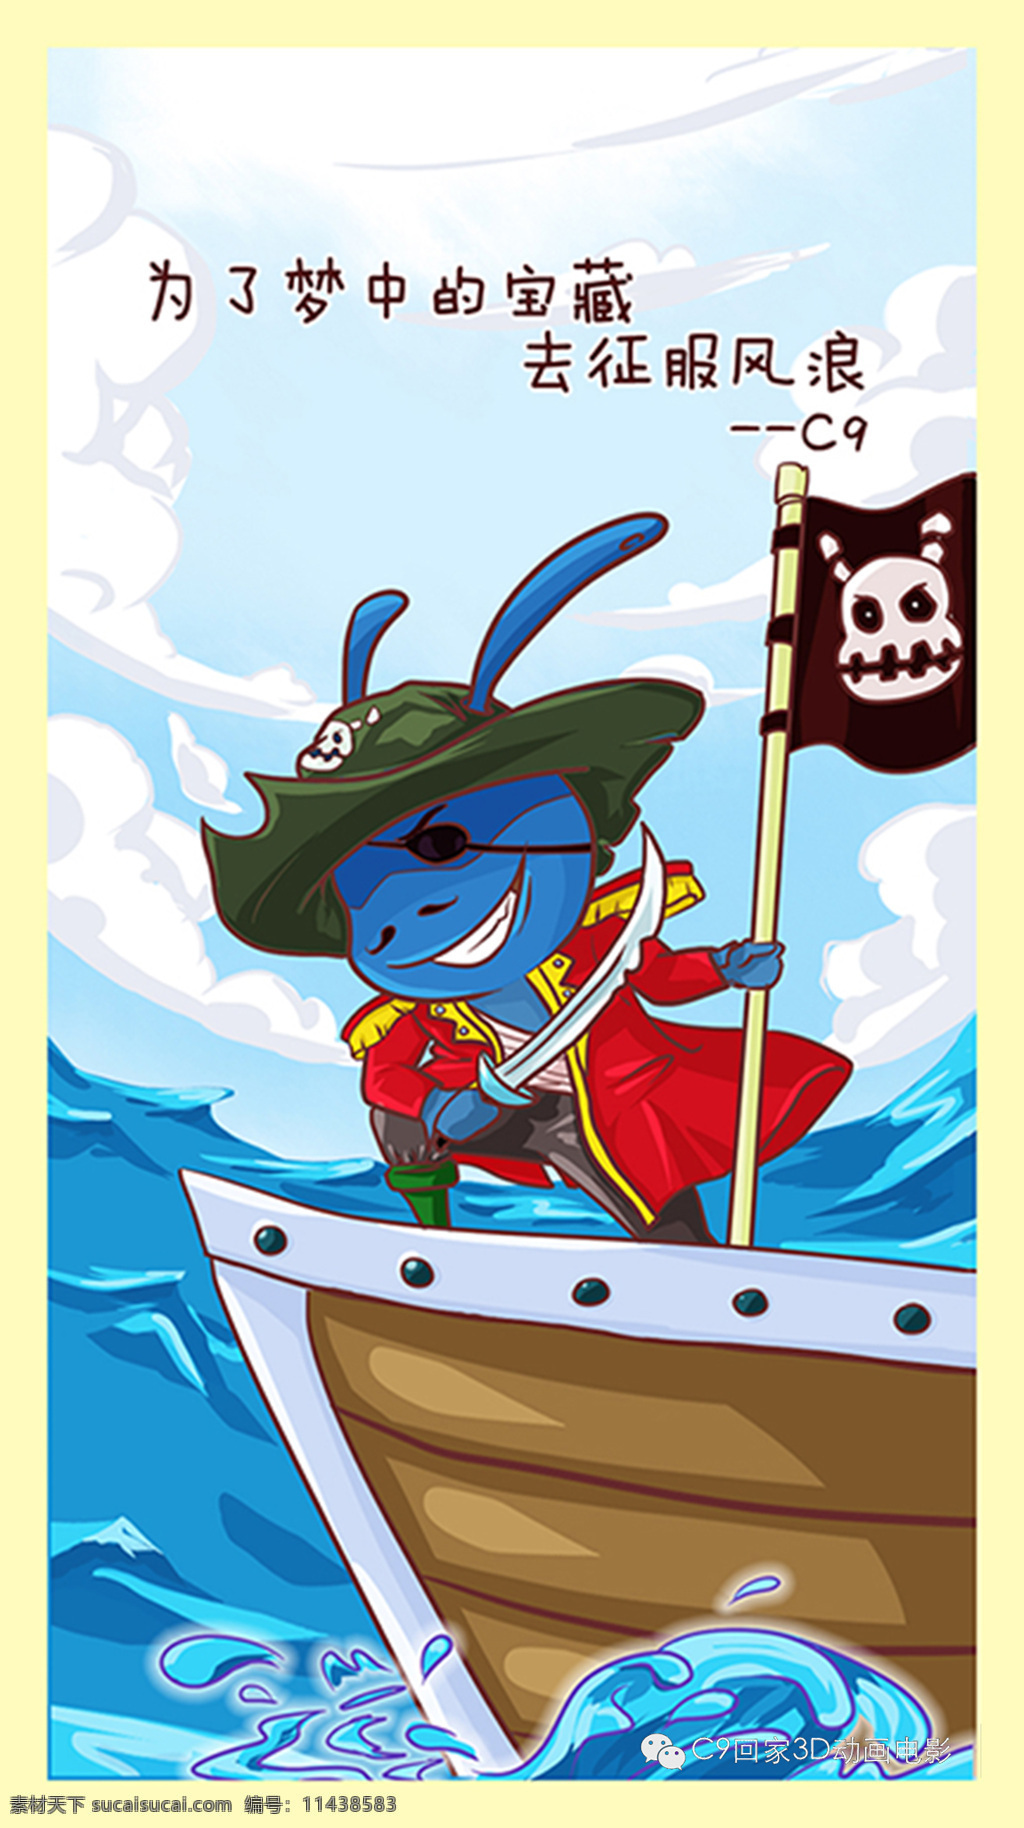 c9 漫画之海盗 c9漫画 连载 电影 海盗 c9回家 动漫人物 动漫动画